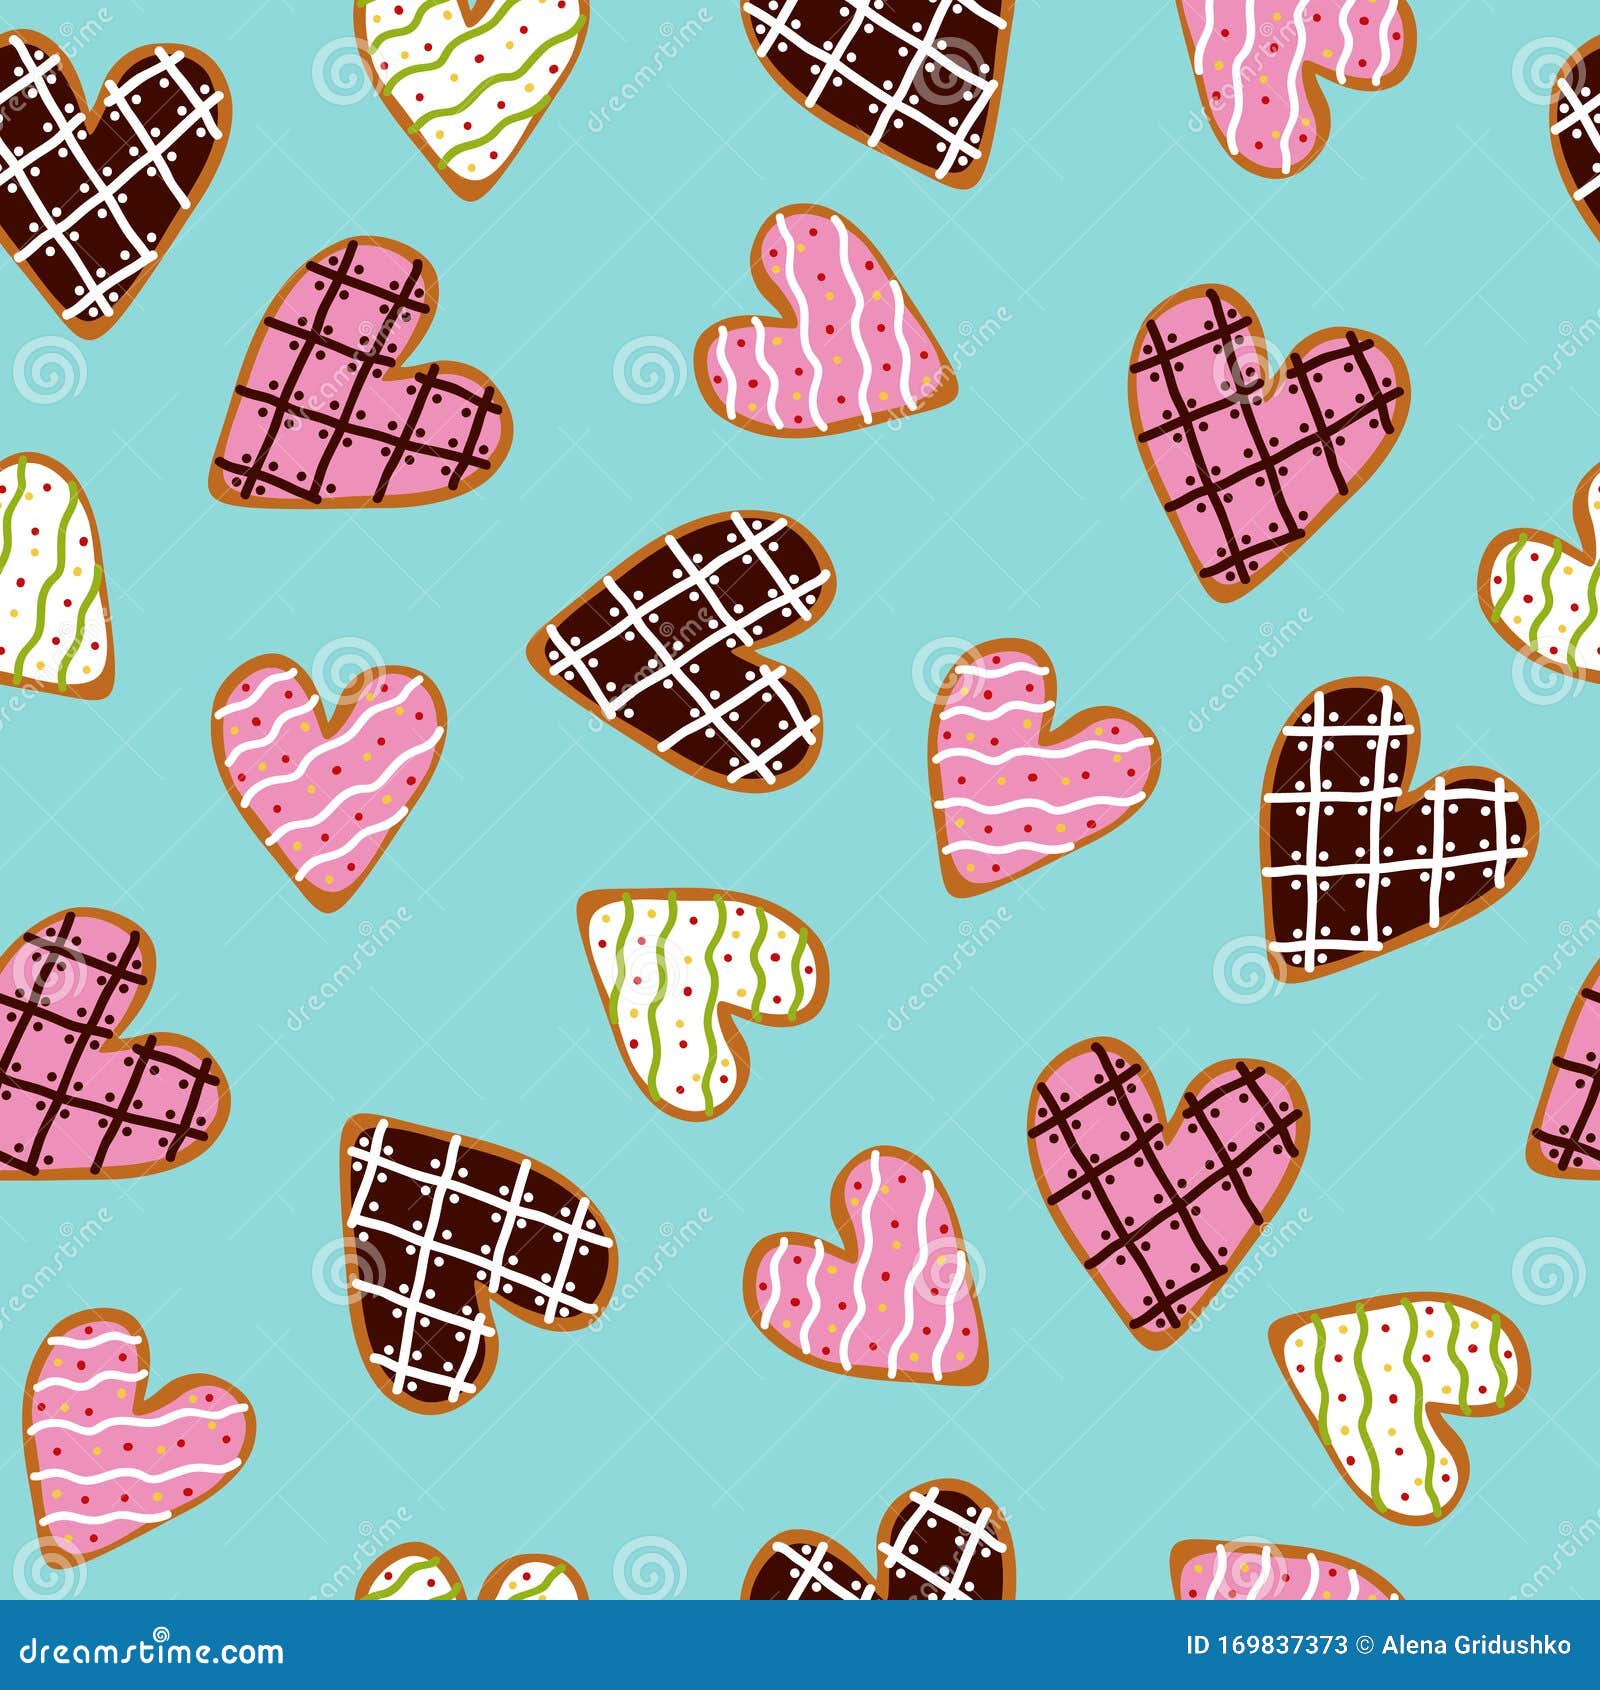 Mẫu hoa văn liên tục với bánh quy hình trái tim đáng yêu sẽ khiến bạn cảm thấy như thể đang ăn một chiếc bánh ngọt ngào. Được thể hiện bằng nét vẽ tinh tế và màu sắc tươi sáng, mẫu này sẽ mang lại nét đáng yêu và thú vị cho bất kỳ thiết kế nào.